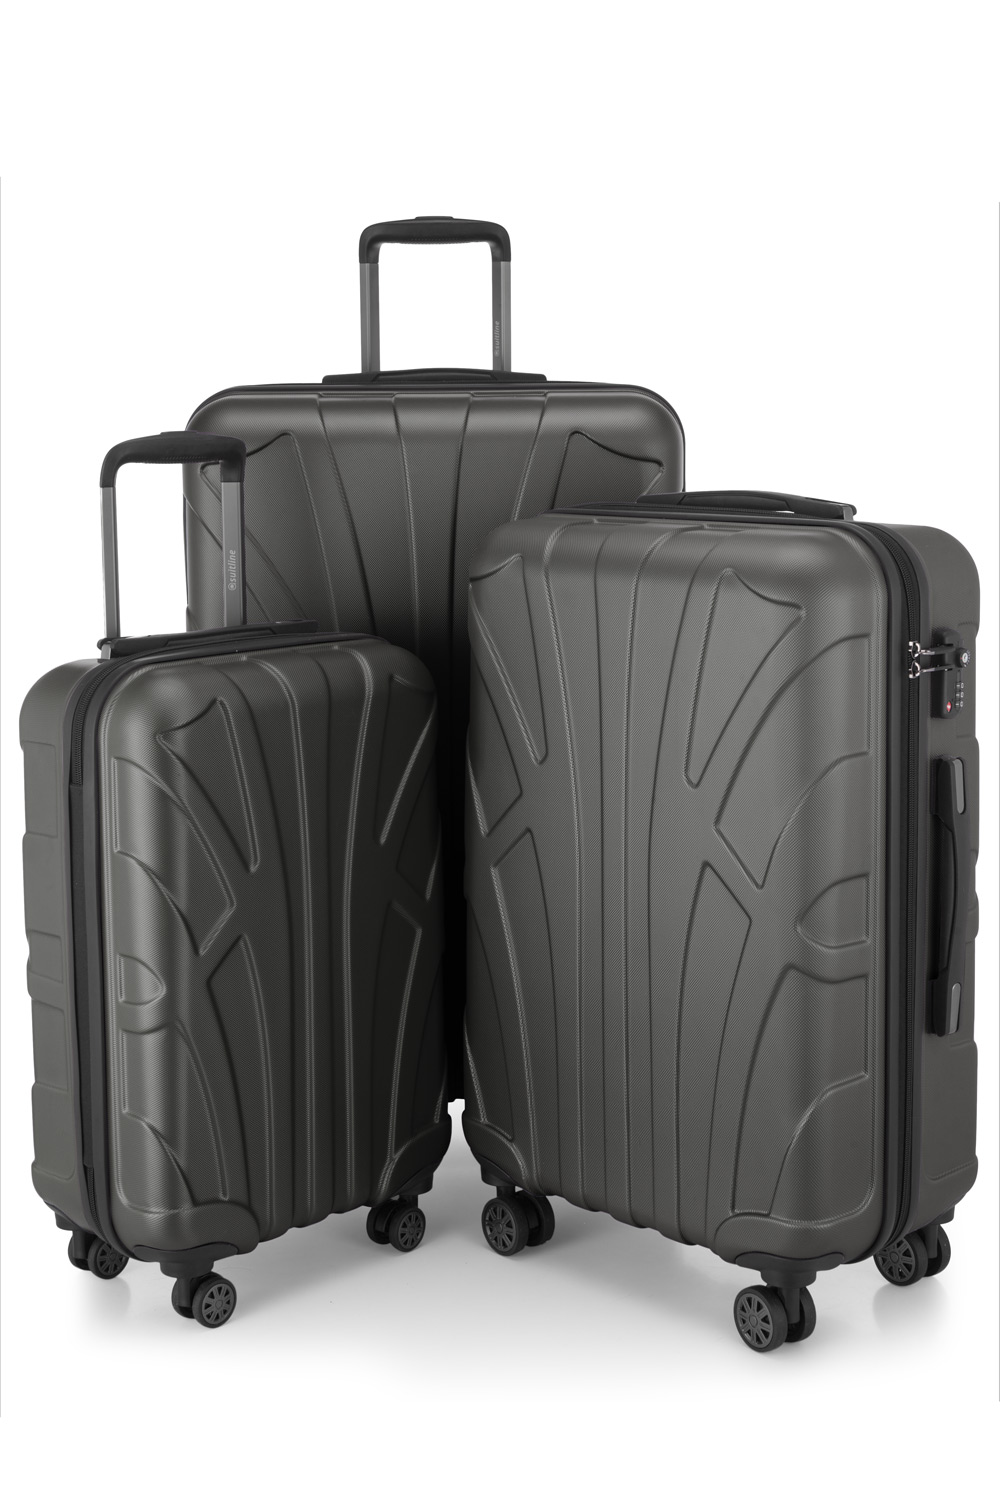 Kofferset 3 teilig, Hartschale ABS, Koffergrößen S/M/L, TSA-Zahlenschloss -  Graphit